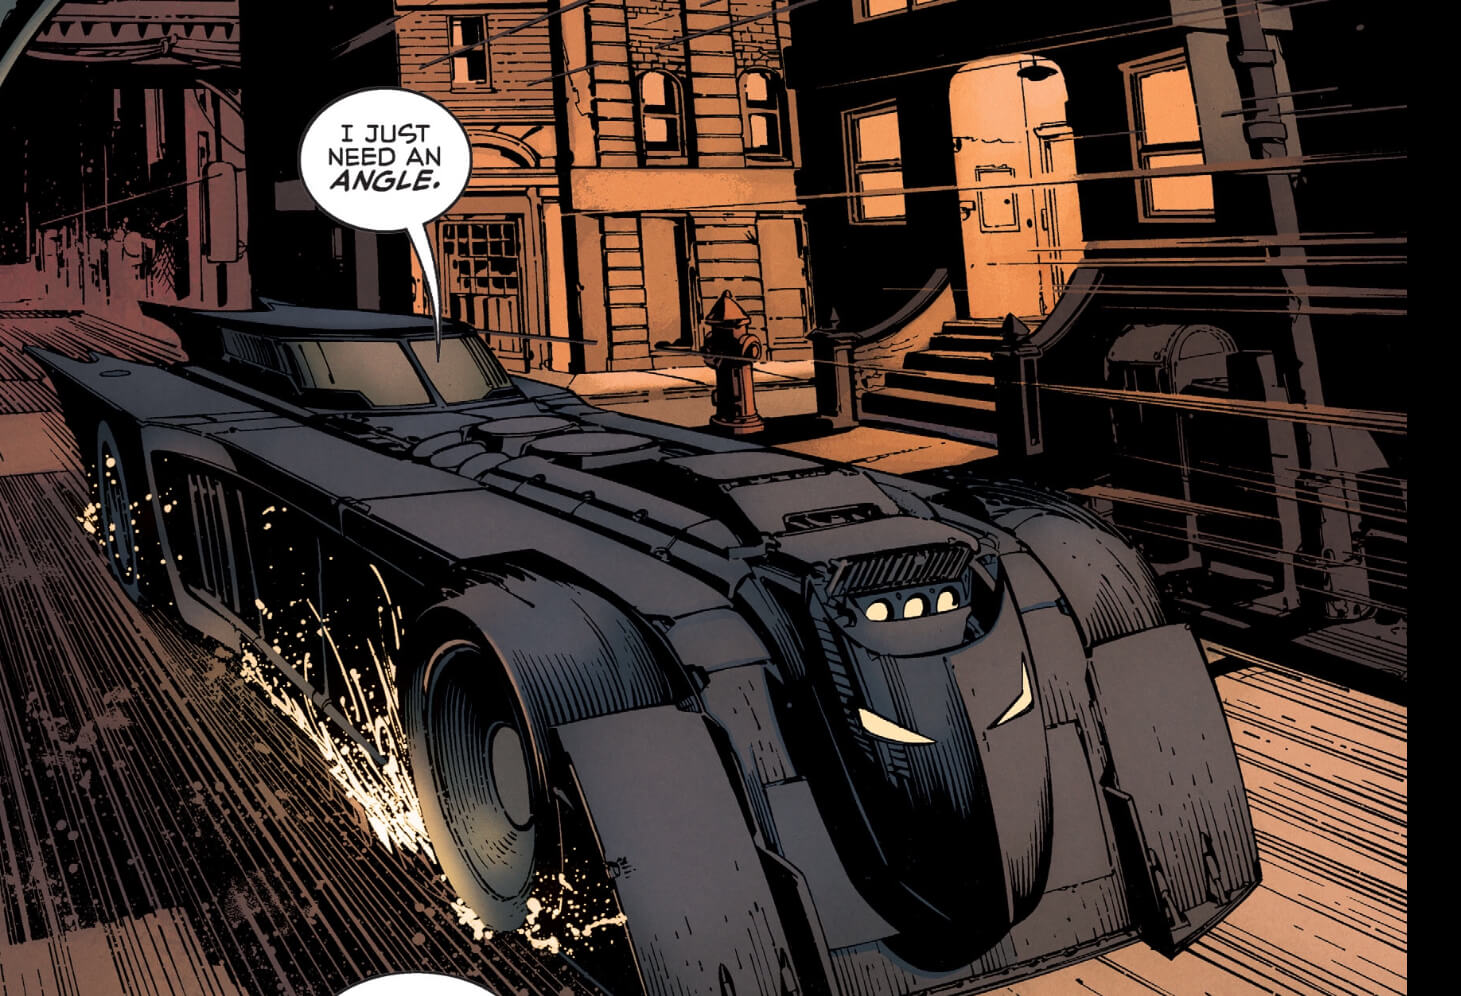 batmobile comics - I Just Need An Angle